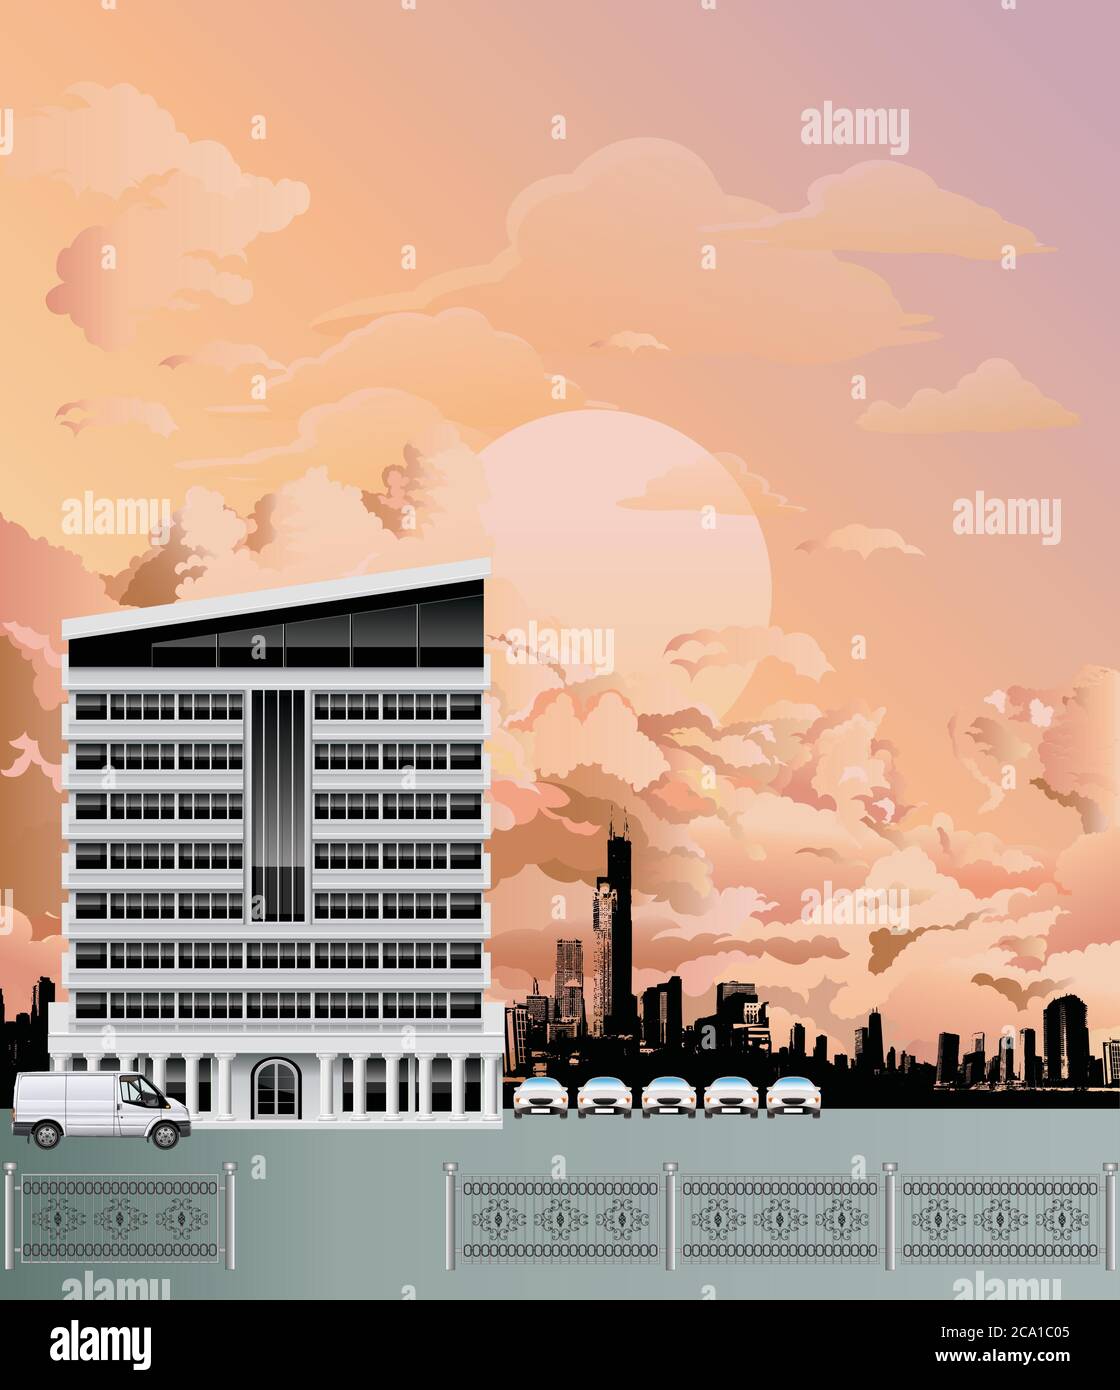 Immeuble de bureaux moderne avec gratte-ciel de ville en silhouettes génériques, situé contre un ciel de l'aube ou de la tombée de la nuit Illustration de Vecteur